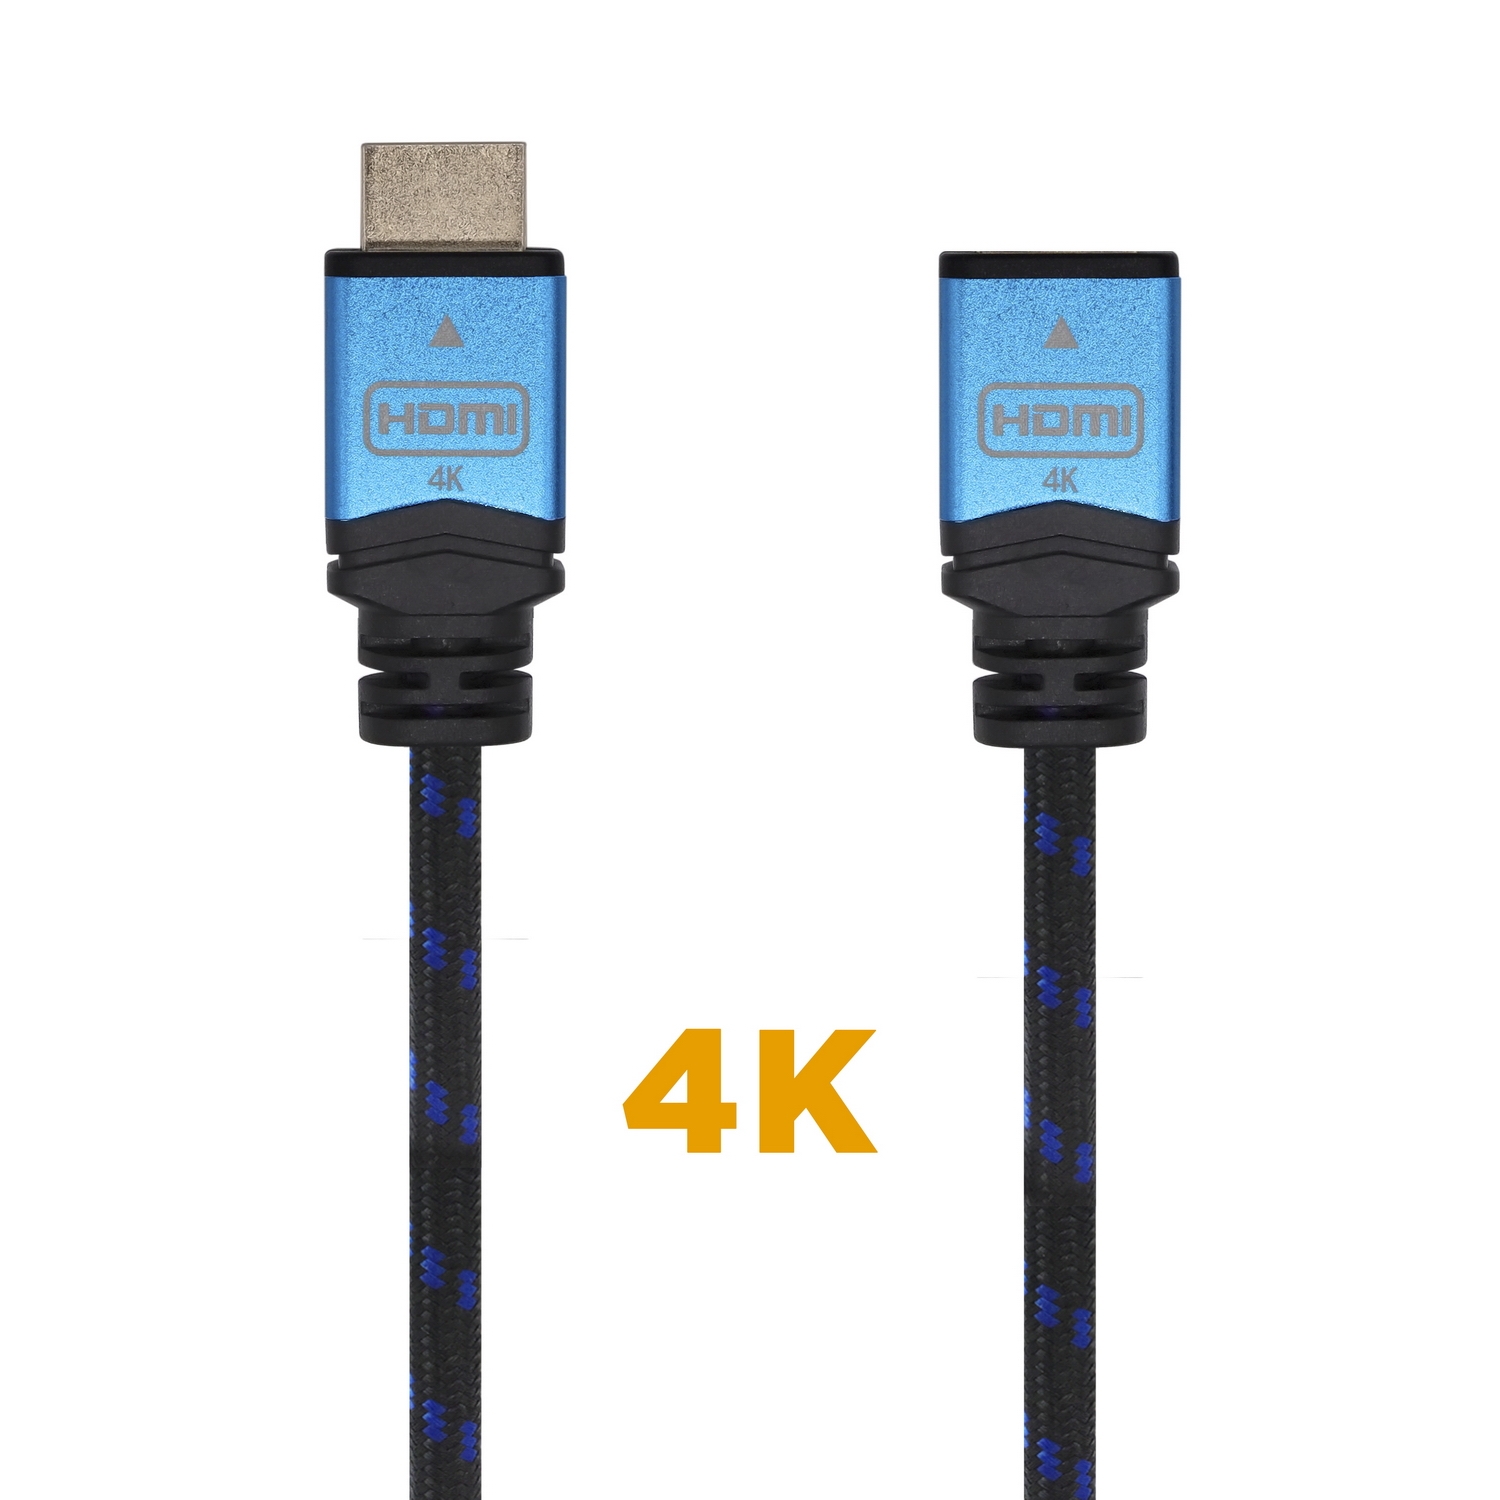 Cable Adaptador HDMI Smart Tv 3 Mts. - Impoluz  Tiendas Electrónica,  Seguridad Y Más, Contra Entrega.